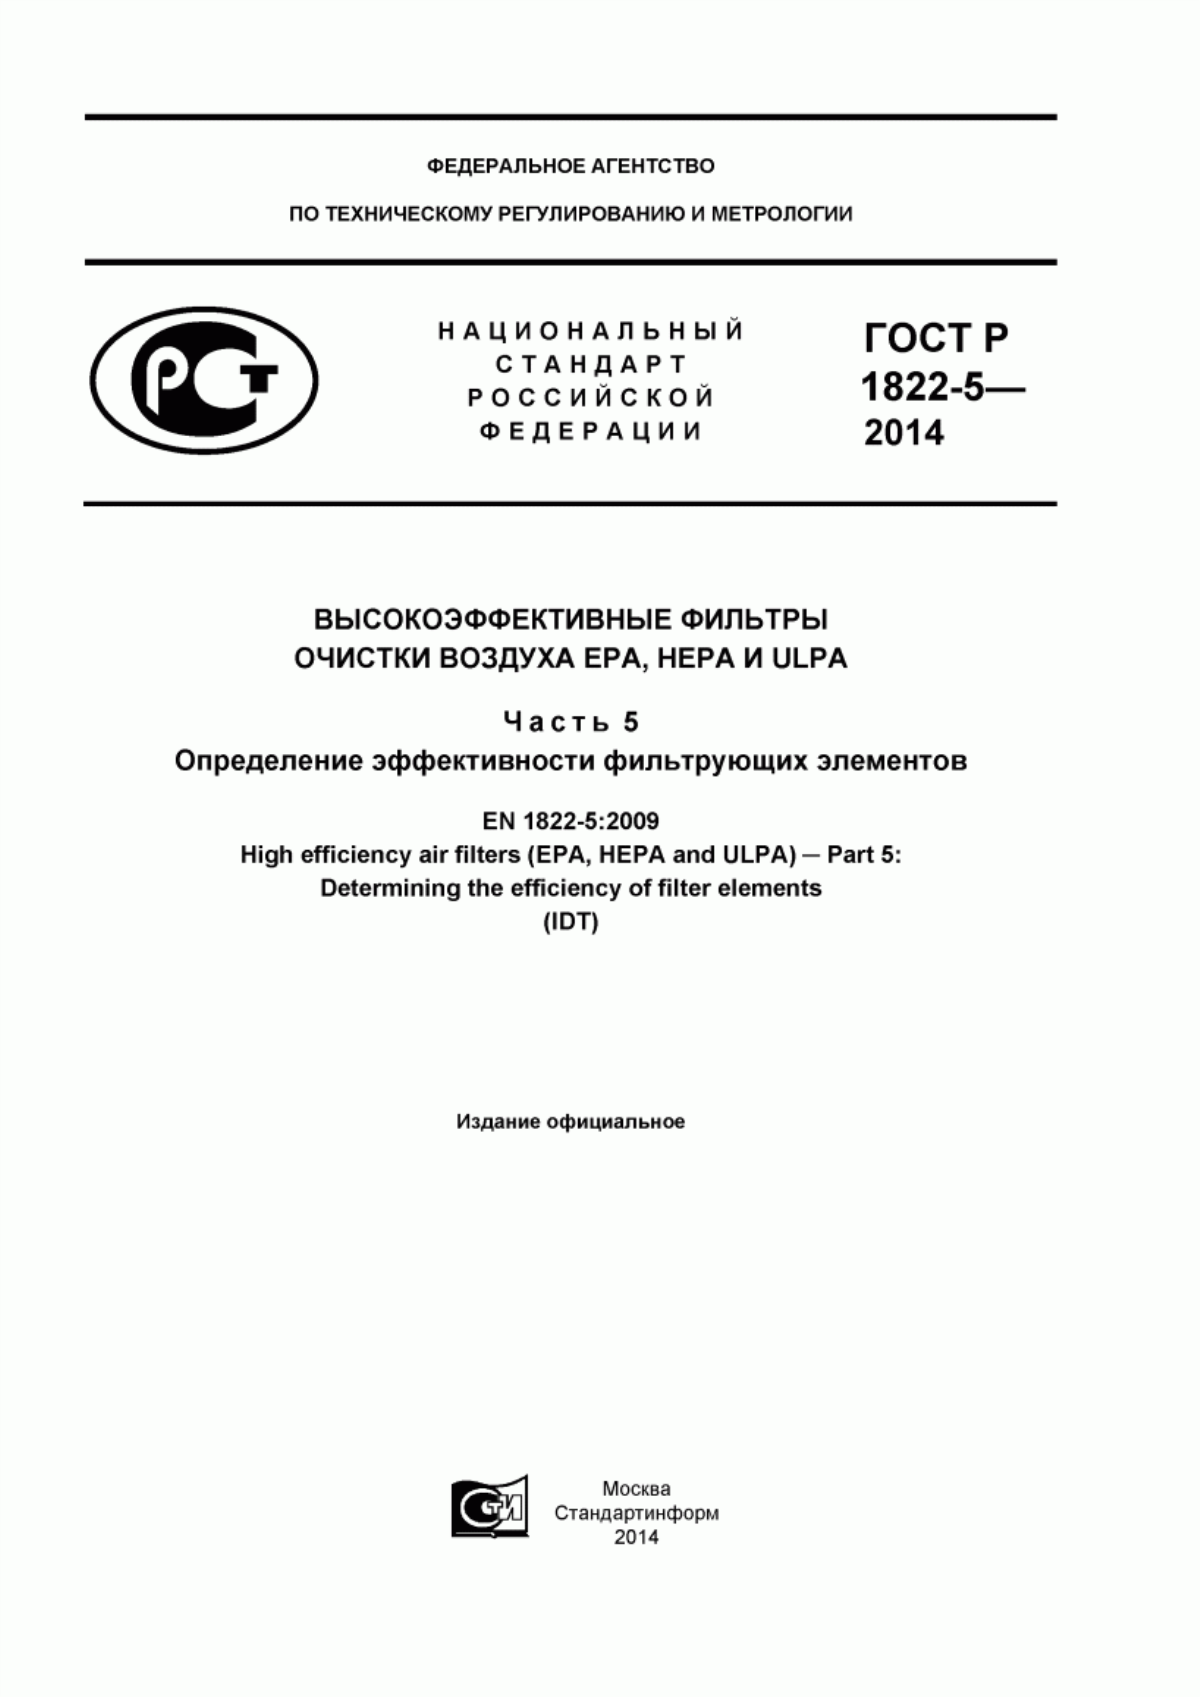 ГОСТ Р ЕН 1822-5-2014 Высокоэффективные фильтры очистки воздуха ЕРА, HEPA и ULPA. Часть 5. Определение эффективности фильтрующих элементов